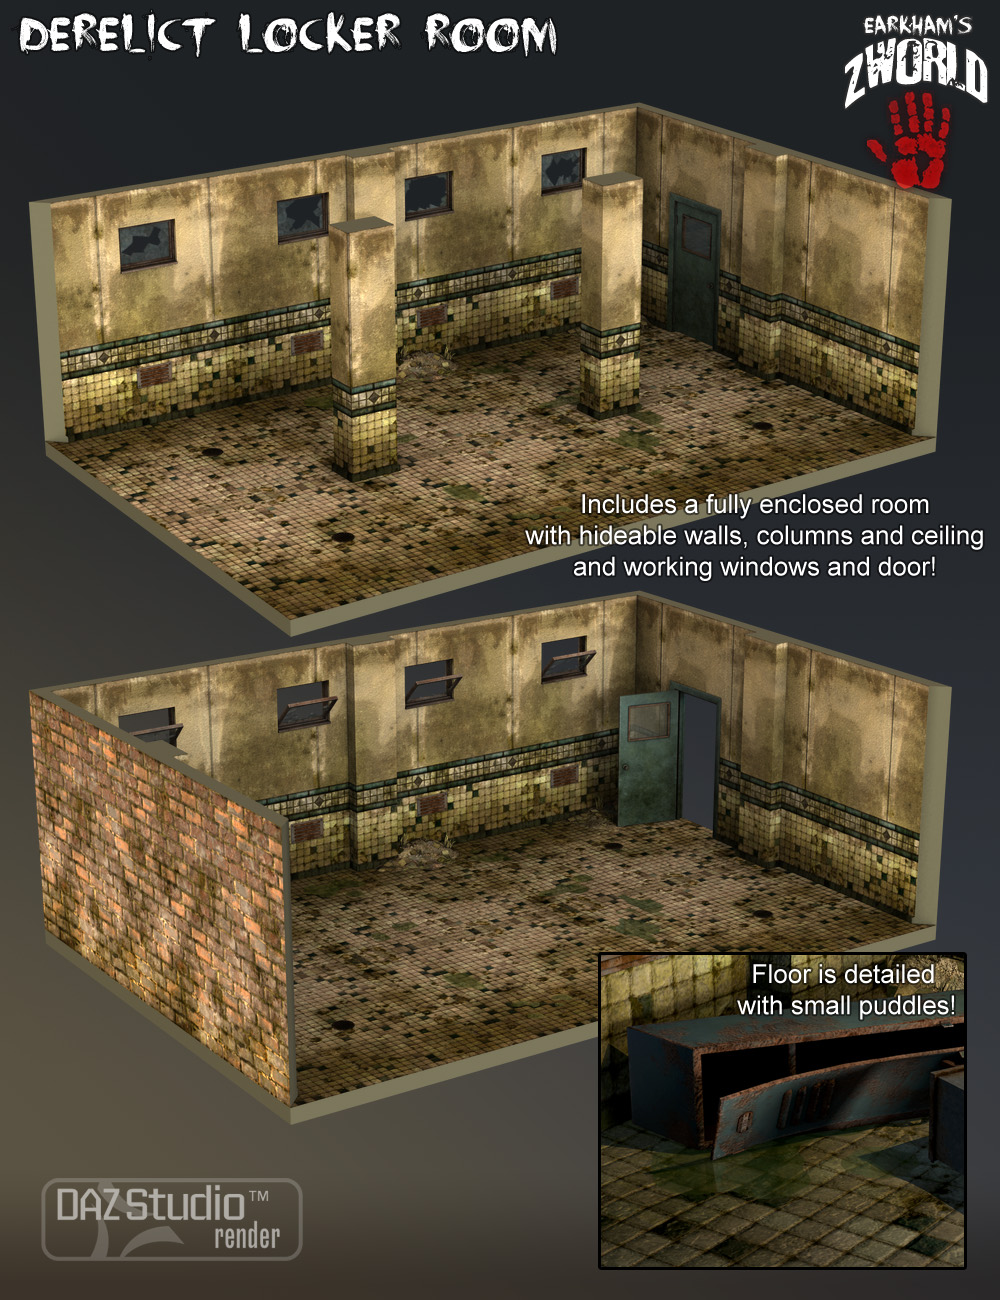 EArkham's ZWorld Derelict Locker Room by: E-Arkham, 3D Models by Daz 3D